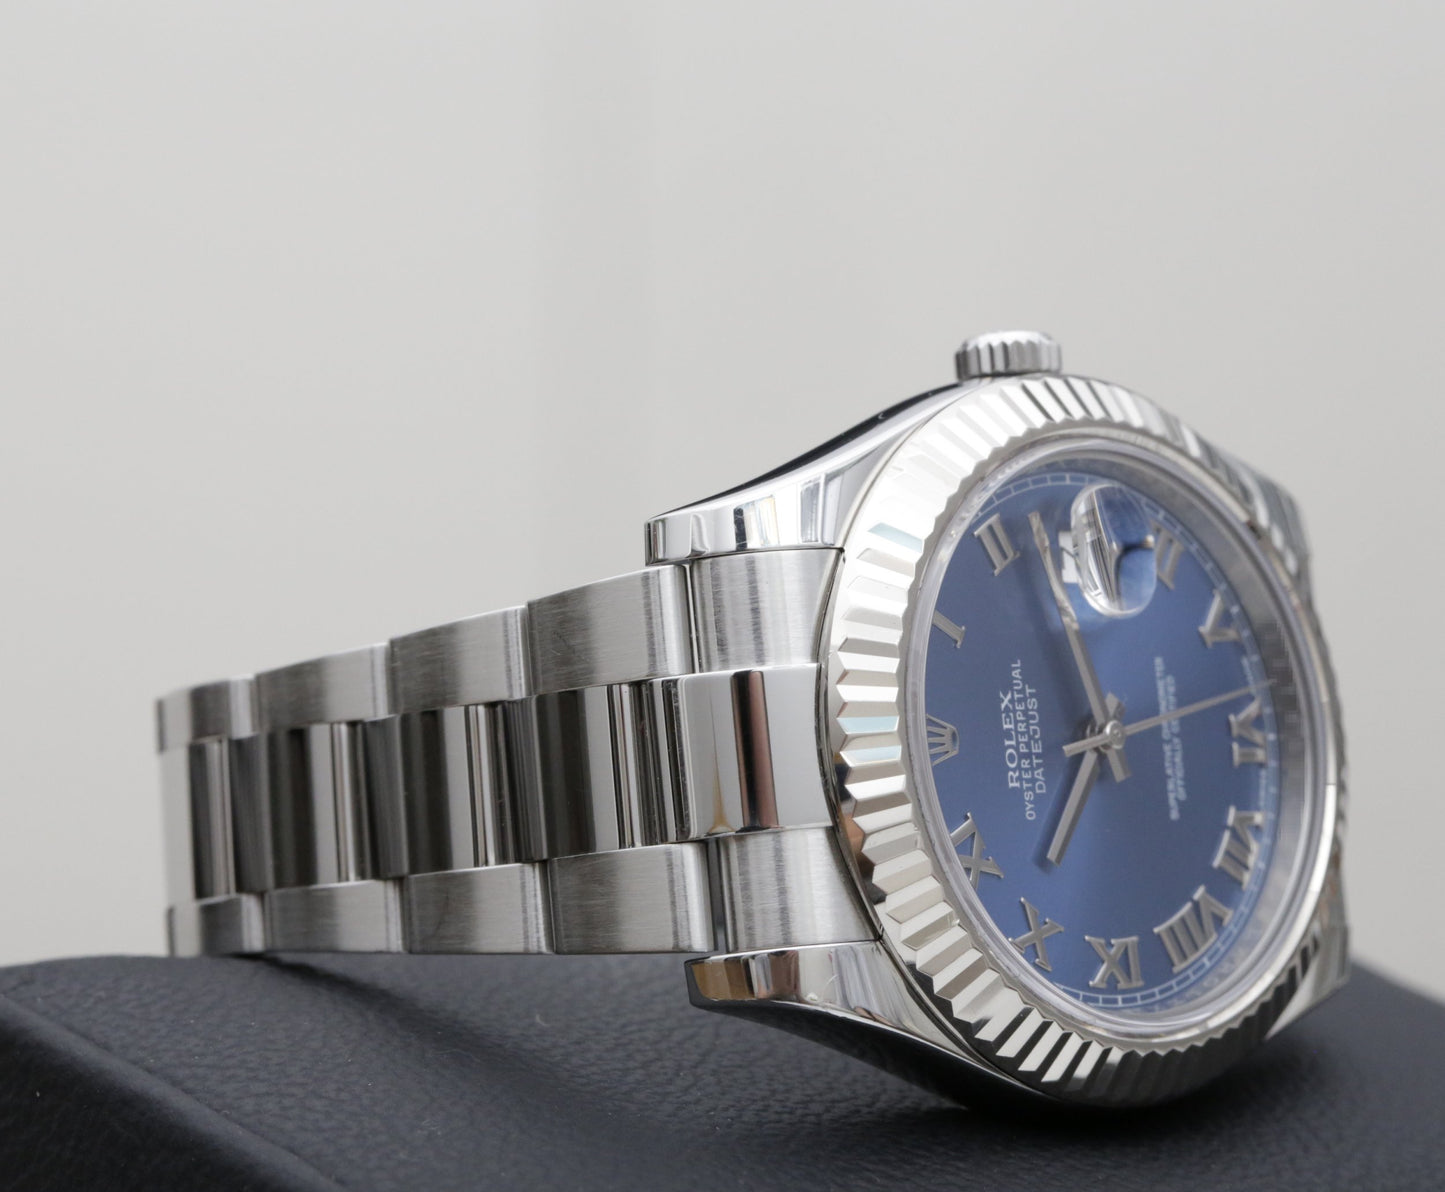 Rolex Datejust II 116334 Azzurro